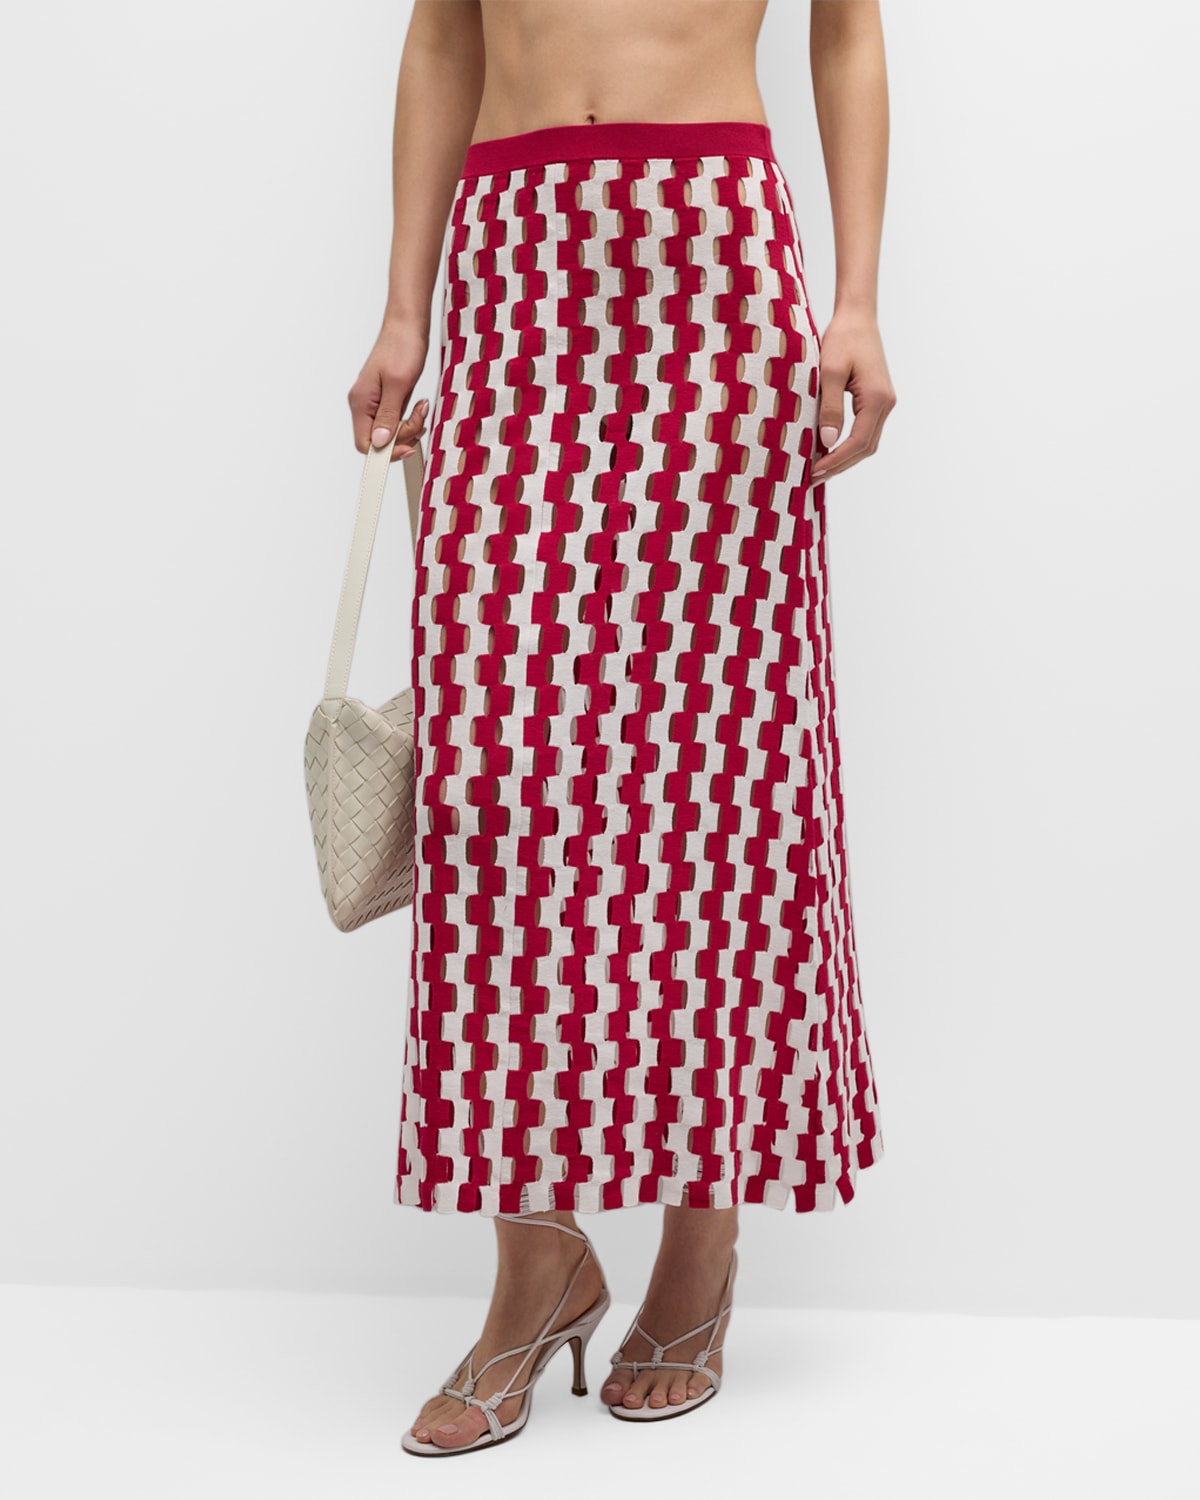 Zankov Beatrice Intarsia-knit Maxi Skirt In Rhodolite Multi